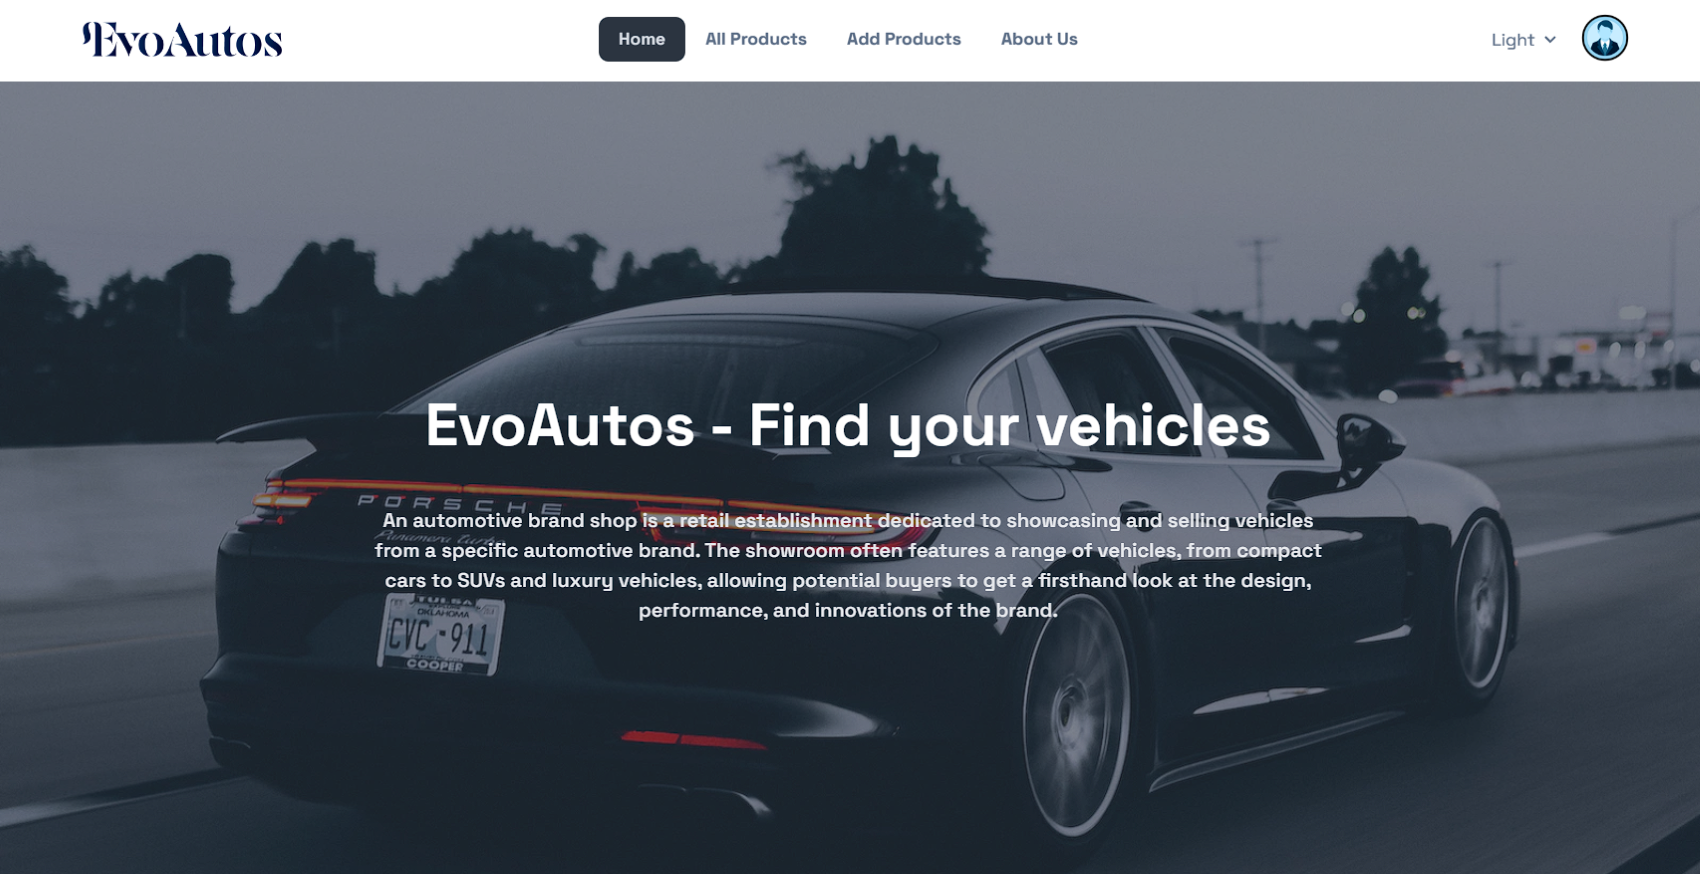 EvoAutos - Automotive Brand Shop